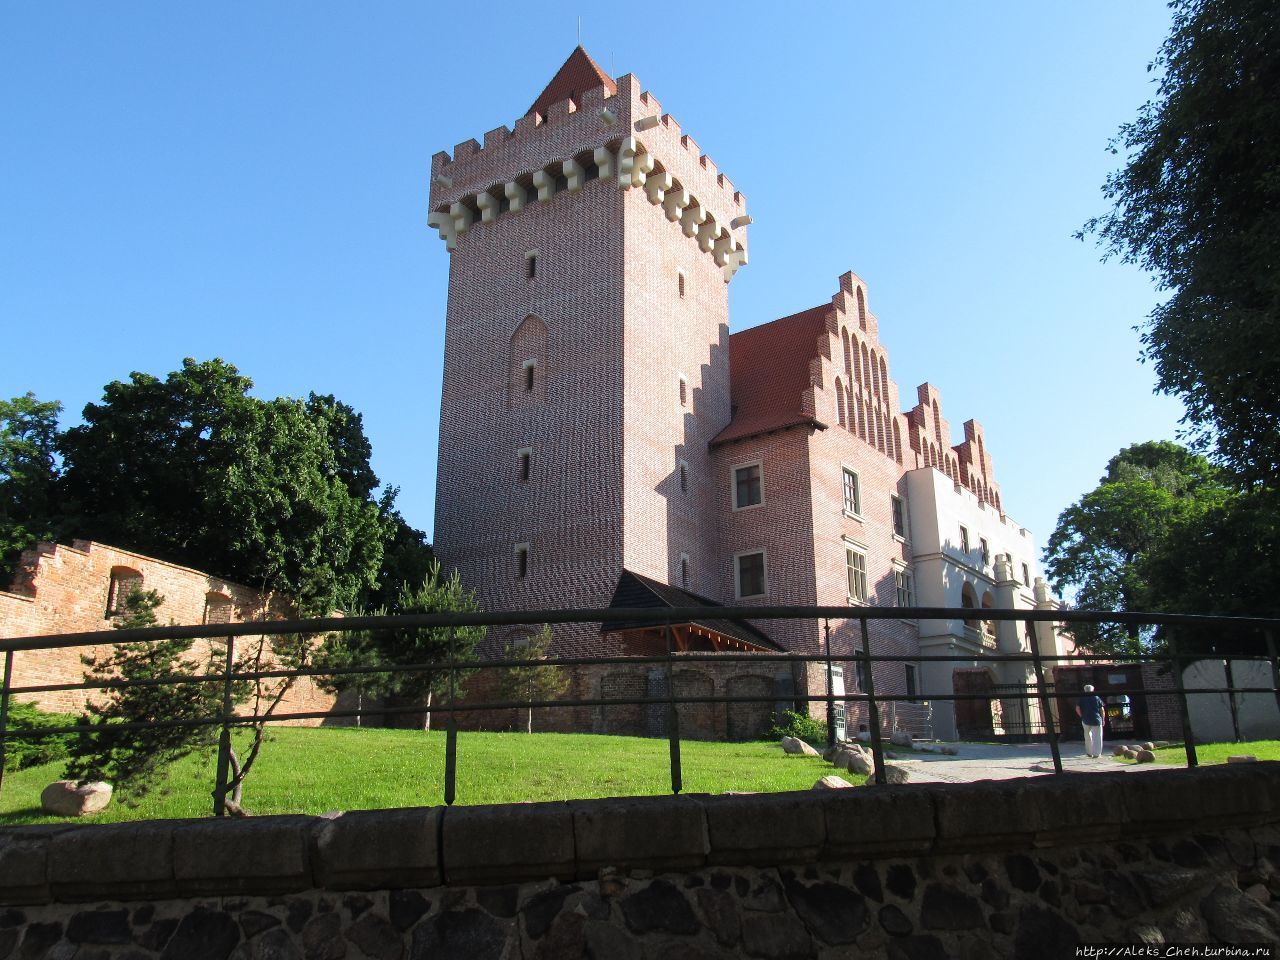 Ренессансный замок был частично разрушен во время Северной войны шведской армией, а затем в 1704 году армиями России и Саксонии. 
Во время Второй мировой войны замок был разрушен.
В 1959-1964 годах была восстановлена башня на фундаменте бывшей кухни. Окончательно замок восстановлен совсем недавно, в 2010-1013 гг.  Эта реконструкция замка была подвергнута критике за допущенные отступления от исторической действительности.